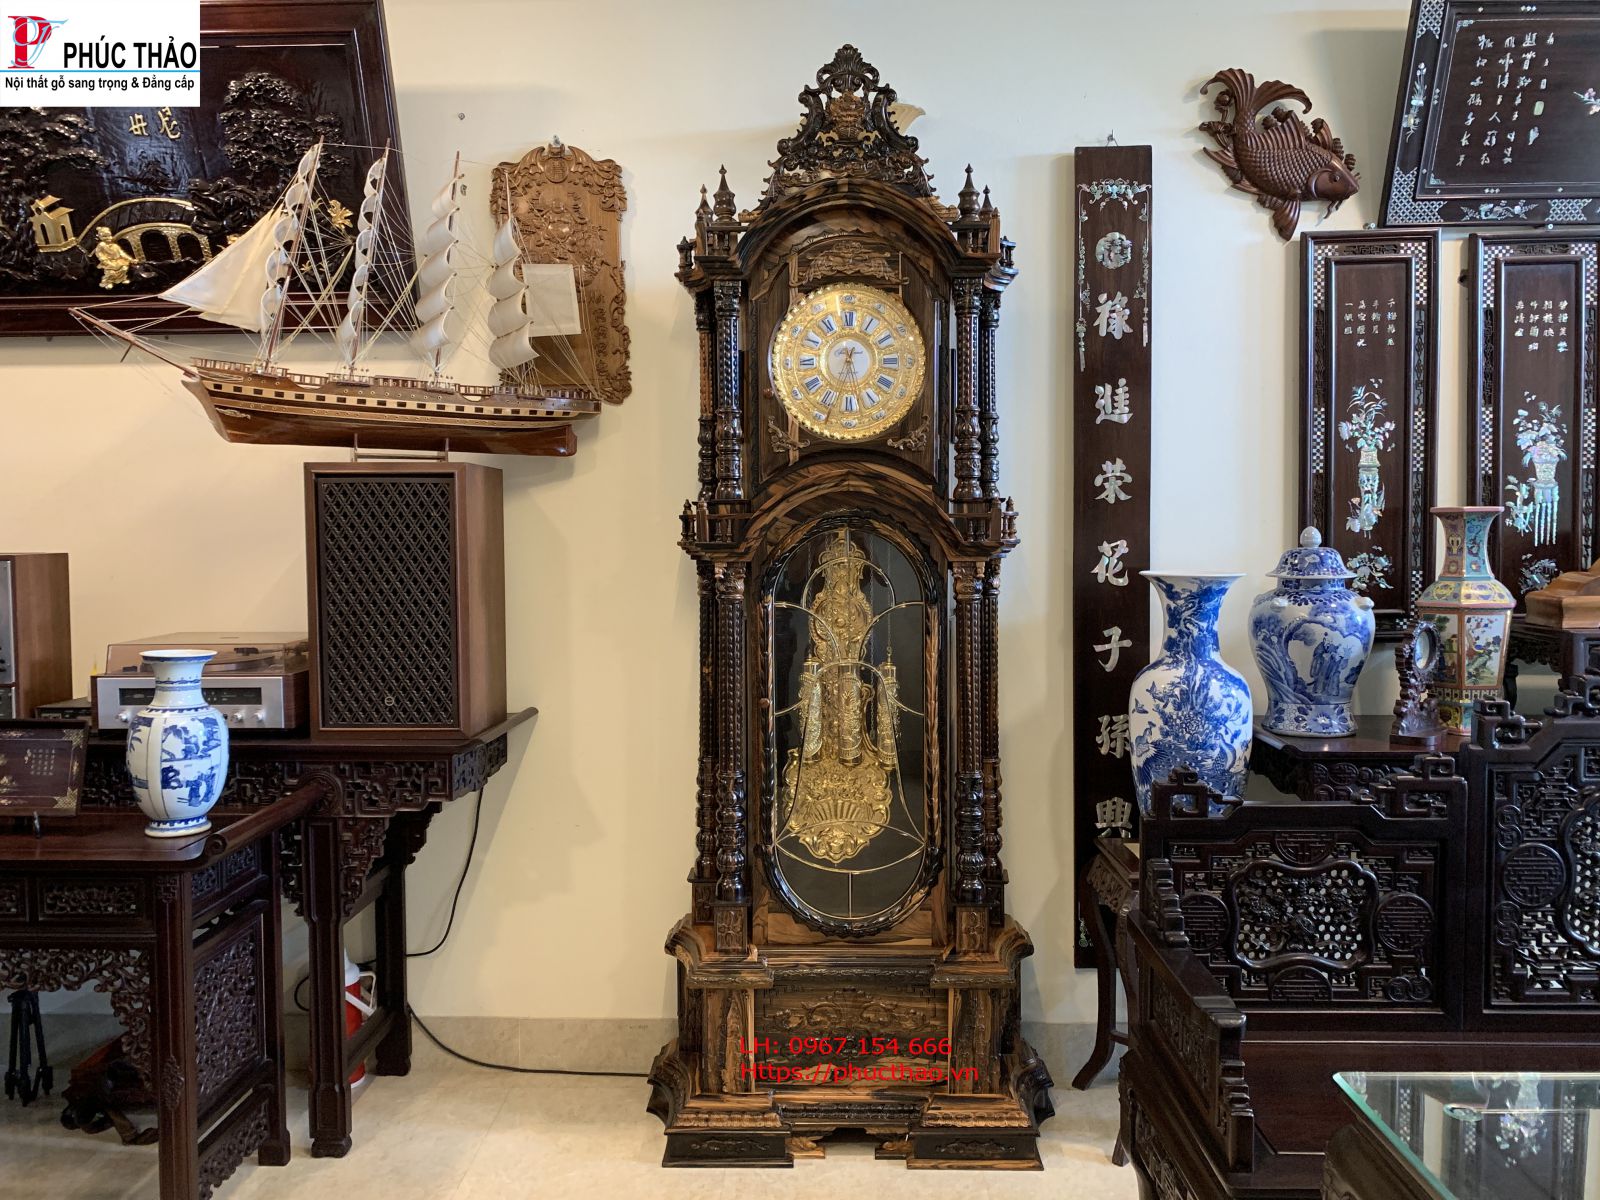 Mua đồng hồ cây giá rẻ chất lượng tại Bình Định